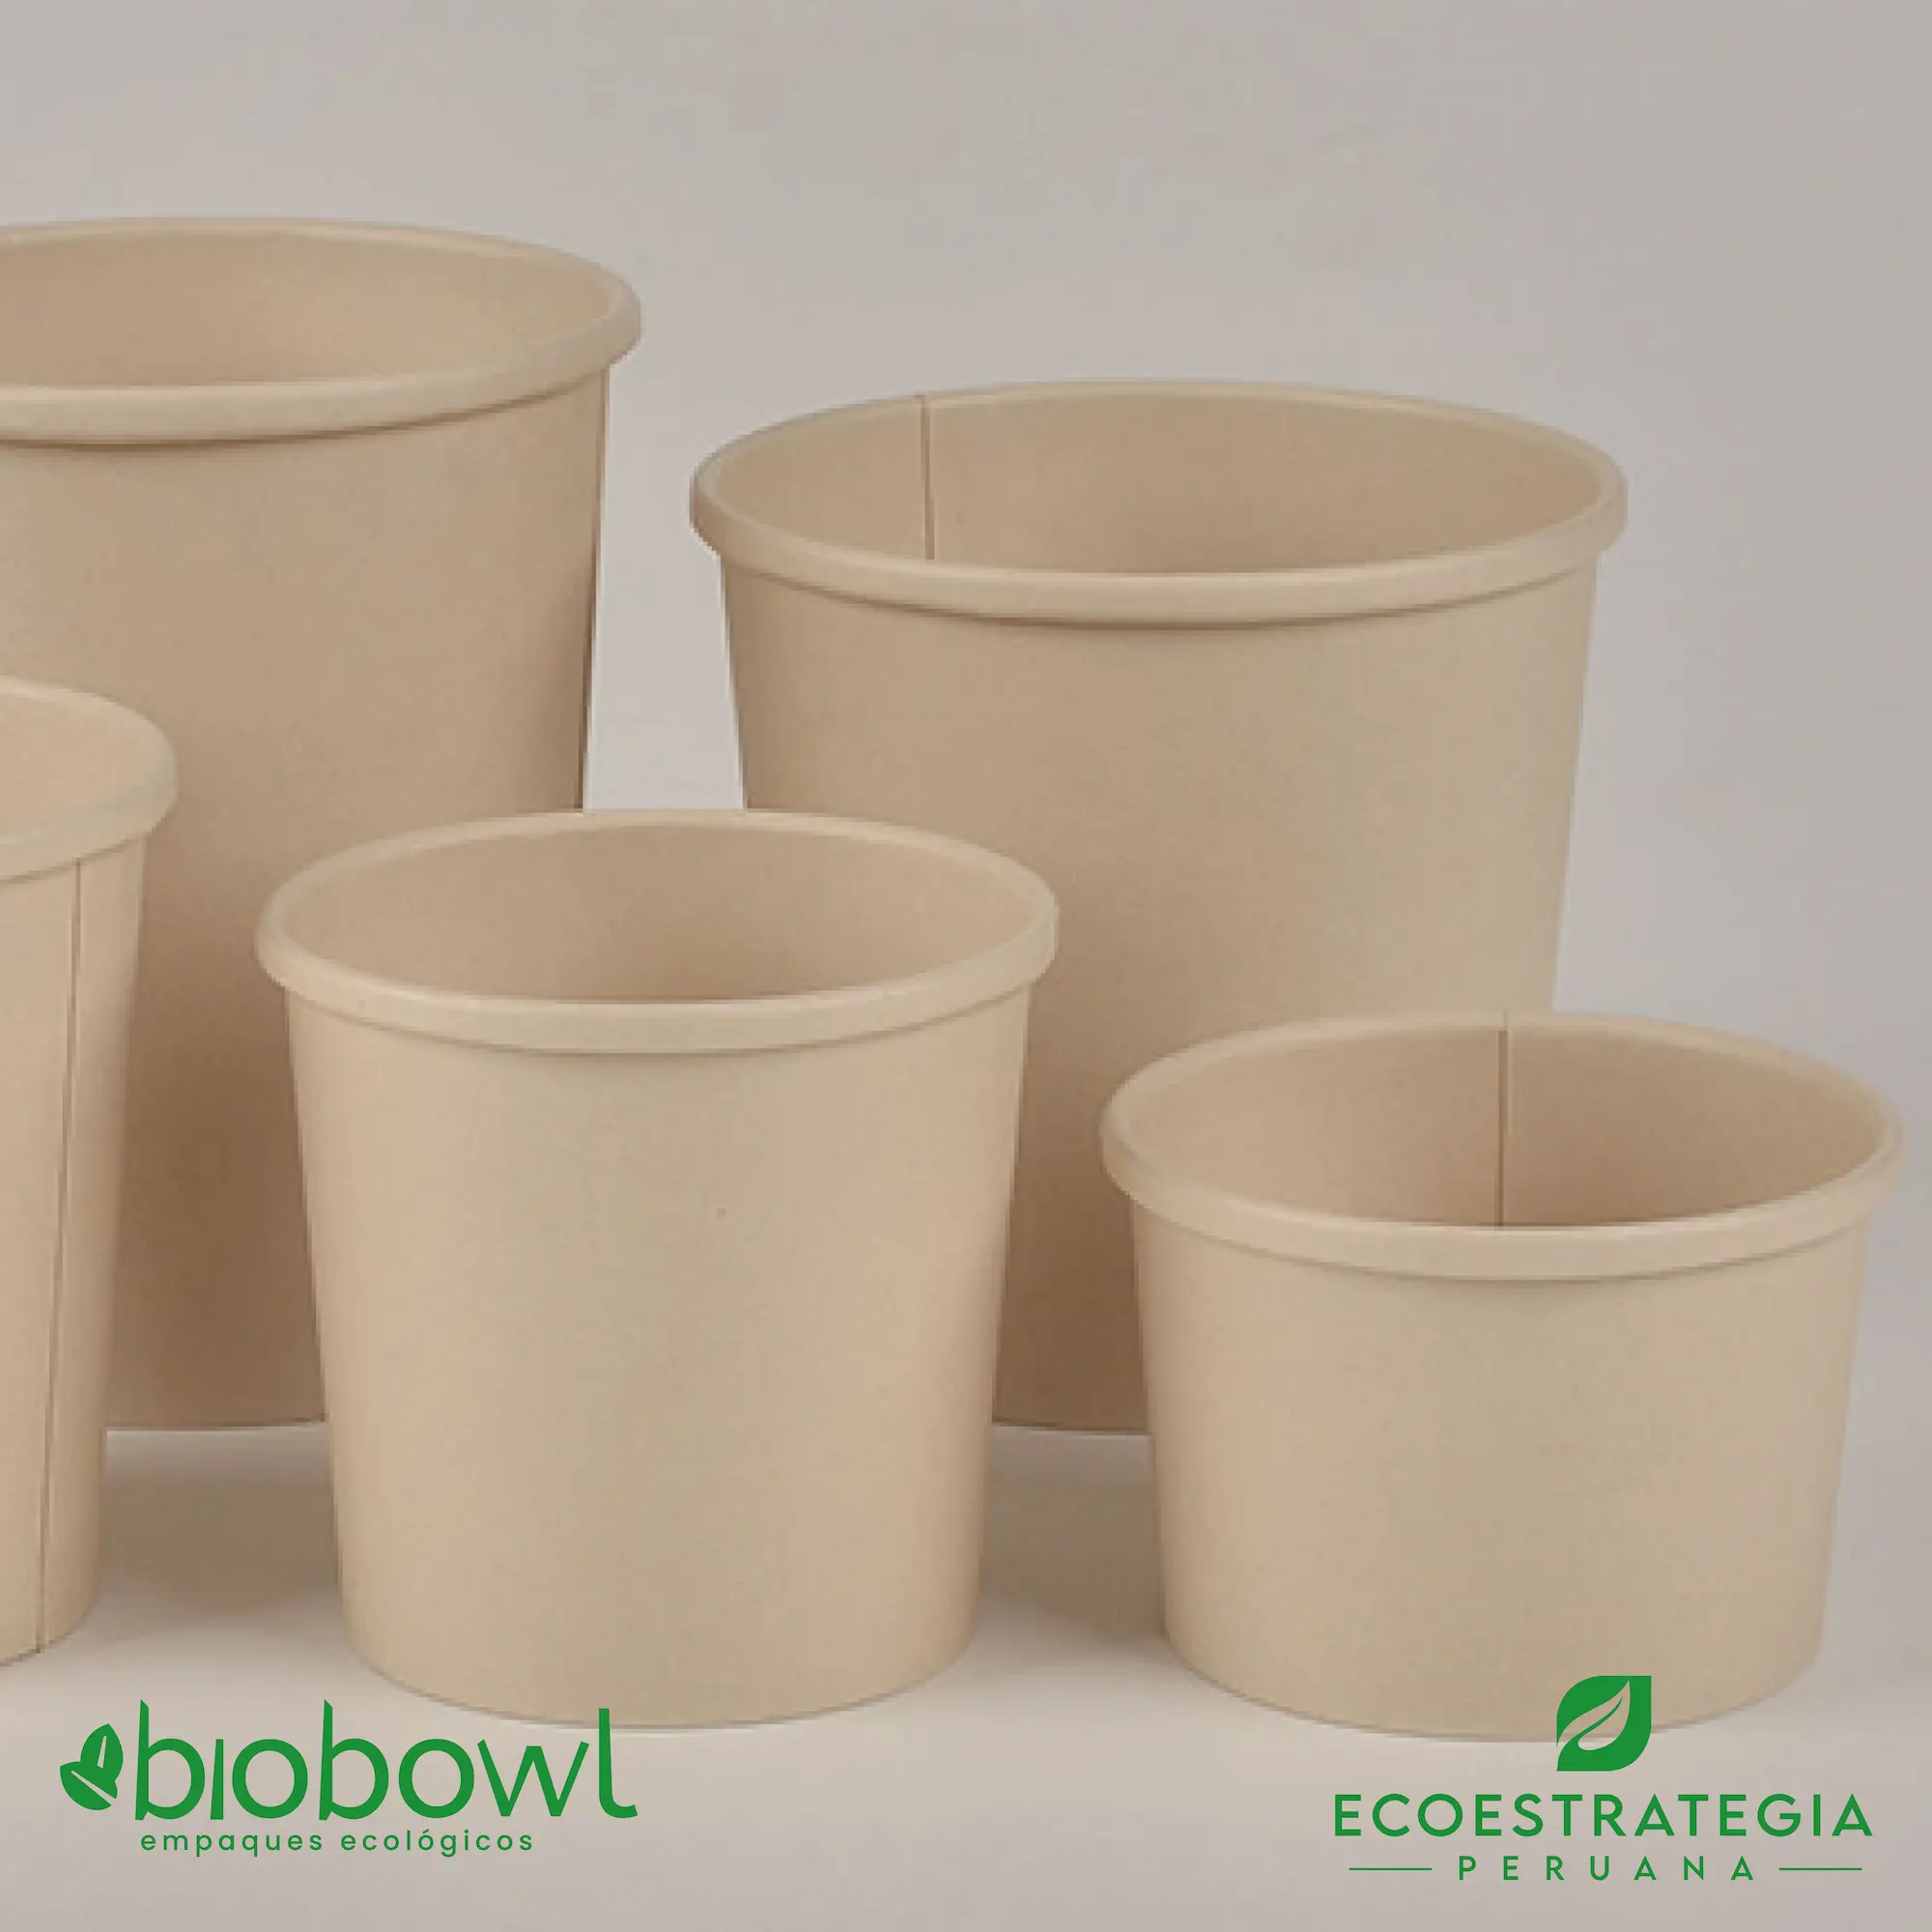 El bowl de bambú sopero biodegradable de 16oz o EP-S16 es conocido tambien como bowl bamboo sopero 16oz, bambú sopero 16oz, bambú salad 16oz, bowl para ensalada con tapa pet 16oz, sopero con fibra de bambú 16oz, bowl bambú ecologico, bowl bambú reciclable, bowl descartable, sopero bambú 16oz, sopero biodegradable 16 oz, sopero kraft 16oz, sopero pamolsa 16 oz, sopero biodegradable, soperos kraft con tapa, bowl kraft 16 oz con tapa, soup cup 16 oz + tapa bambú, bowl bambú 16 oz, bowl helado 16 oz, bowl de 16 onzas de kraft, bowl de 16 oz de bambú, envase biodegradable de 16 oz, envase 16 oz con tapa, contenedores bambú 16 oz, contenedores kraft 16 oz, envase circular 16 oz, bowl celulosa de bambú 16 oz, bowl hondo biodegradable 16 oz, envases soperos con tapa 16 oz, envase circular 16 oz bioform kraft, sopero fibra de bambú 16 oz, envase para sopa 16 oz, envase para helado 16 oz, envase barril 16 oz biodegradable, envase bambú 16 oz, importadores de sopero 16 oz bambú, distribuidores de sopero 16 oz bambú, mayorista de sopero 16 oz bambú